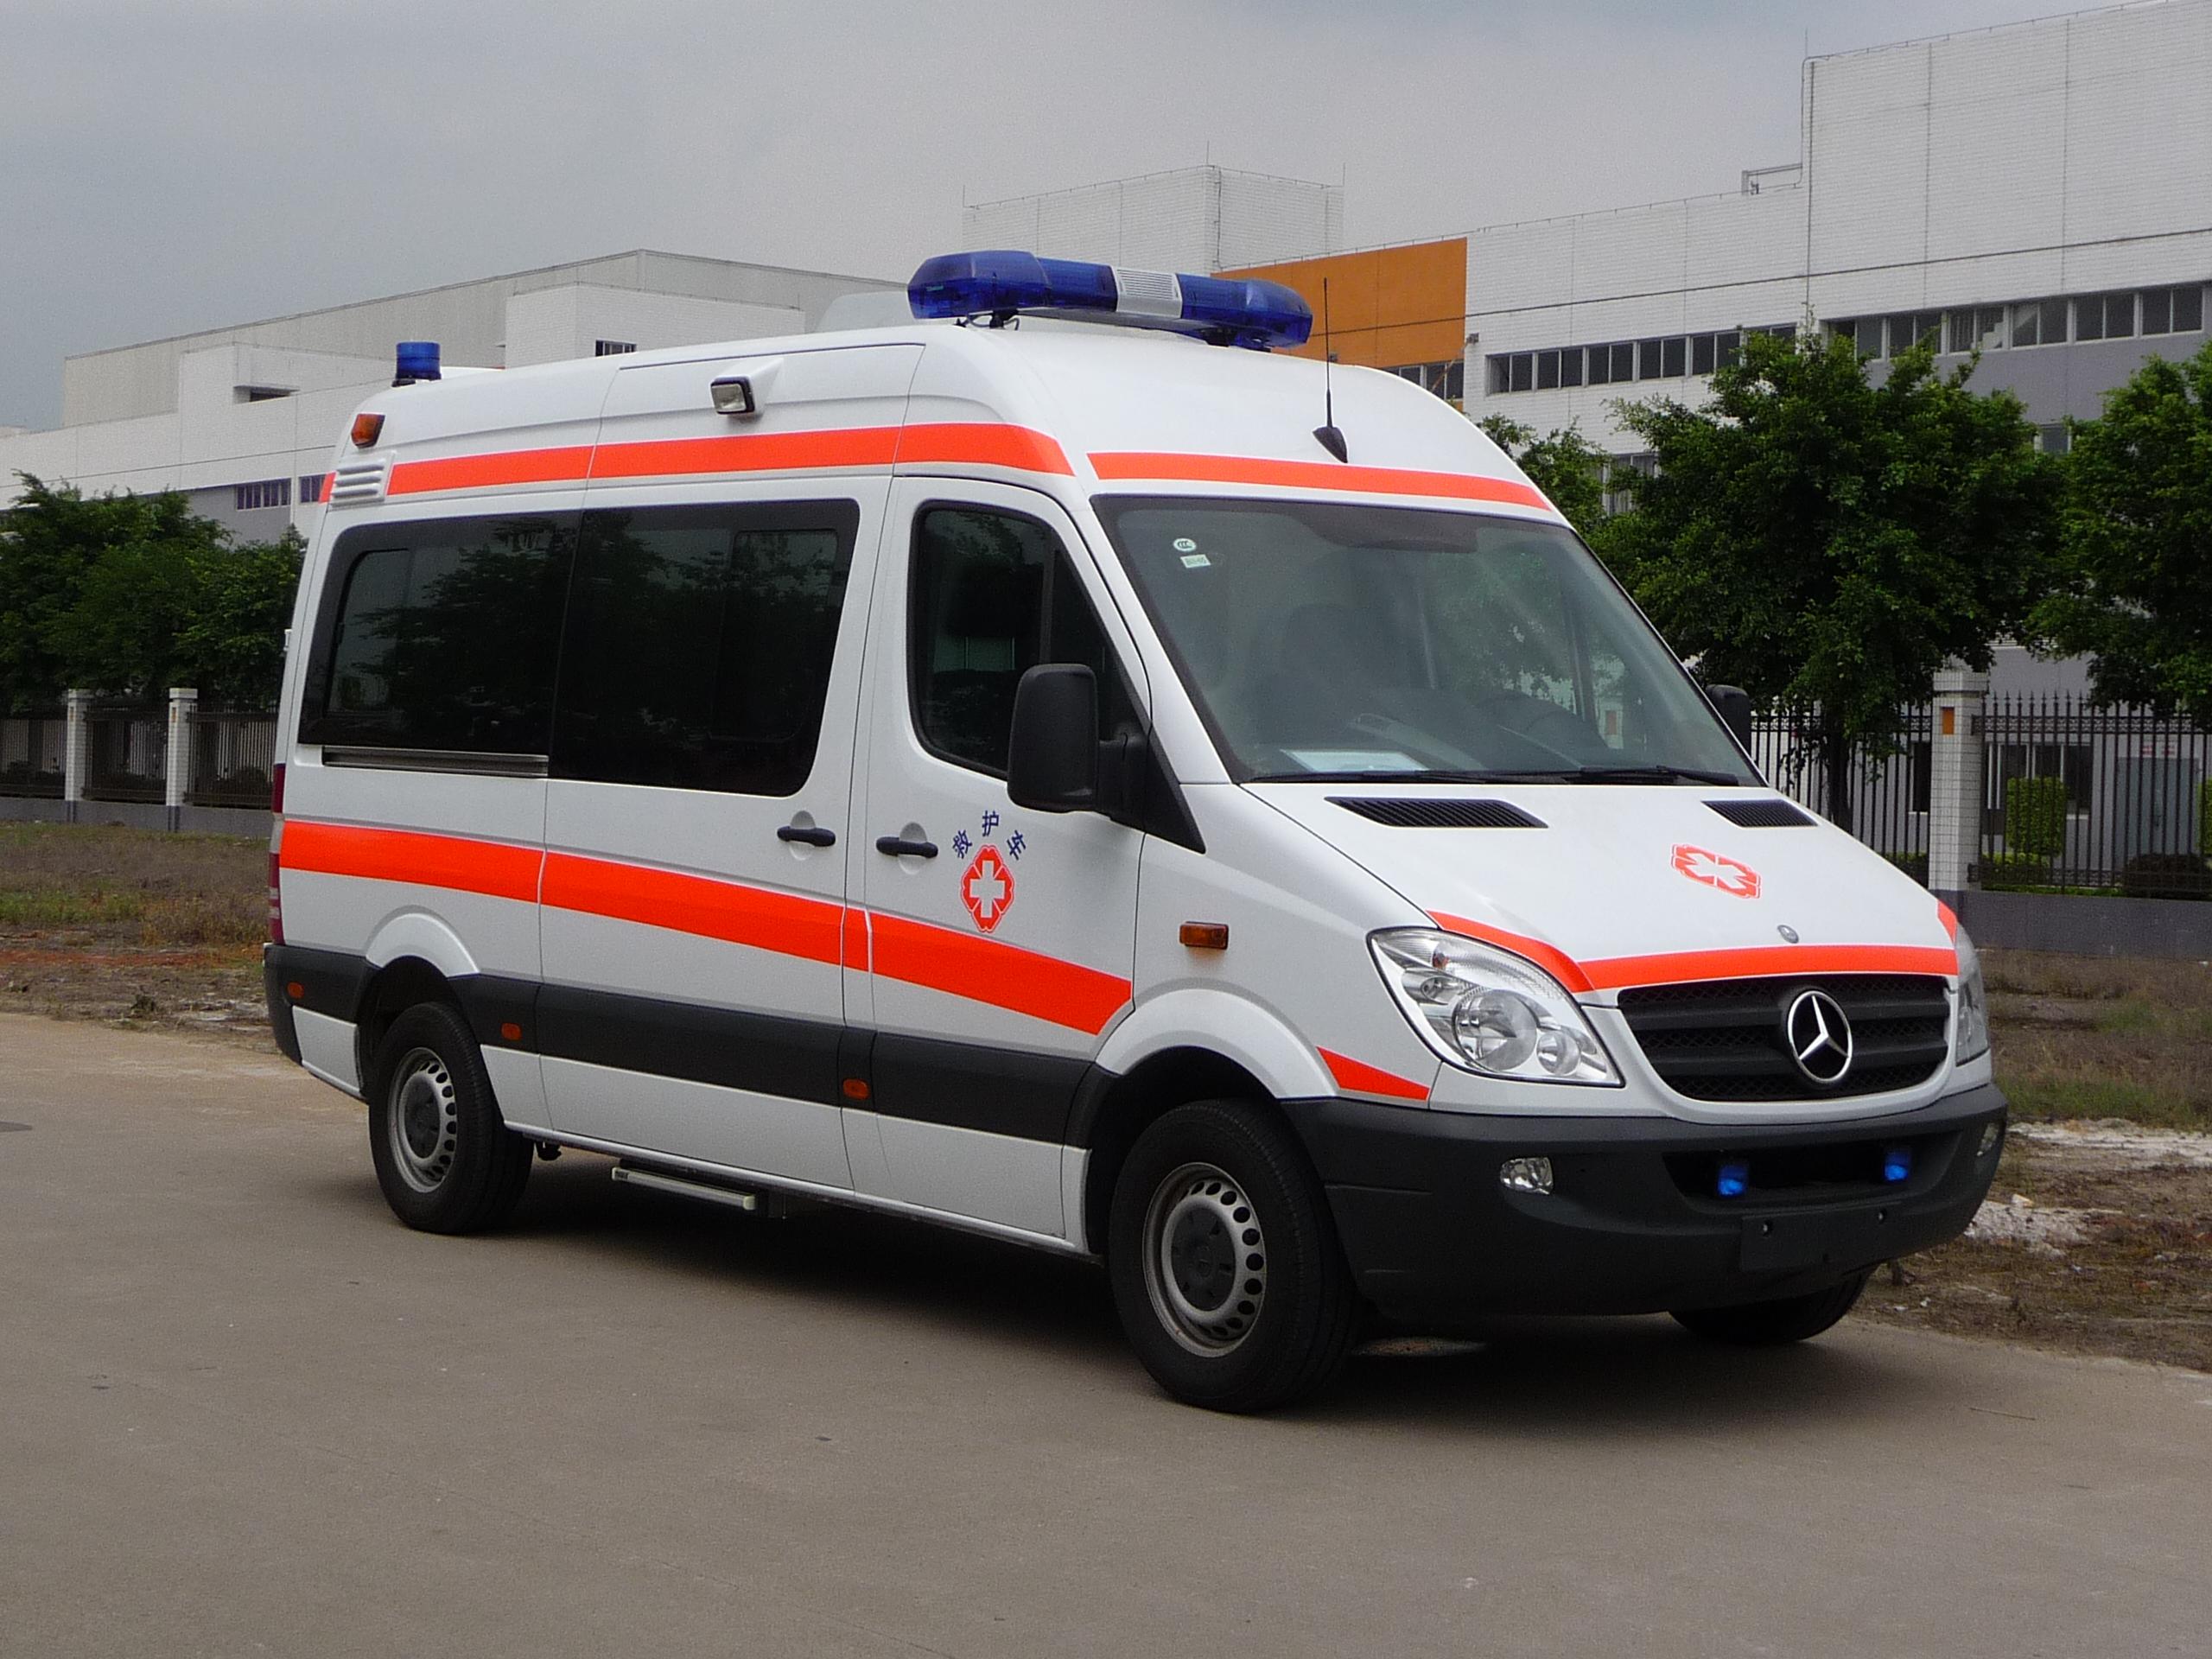 库尔勒120长途救护车出租服务接送患者救护车